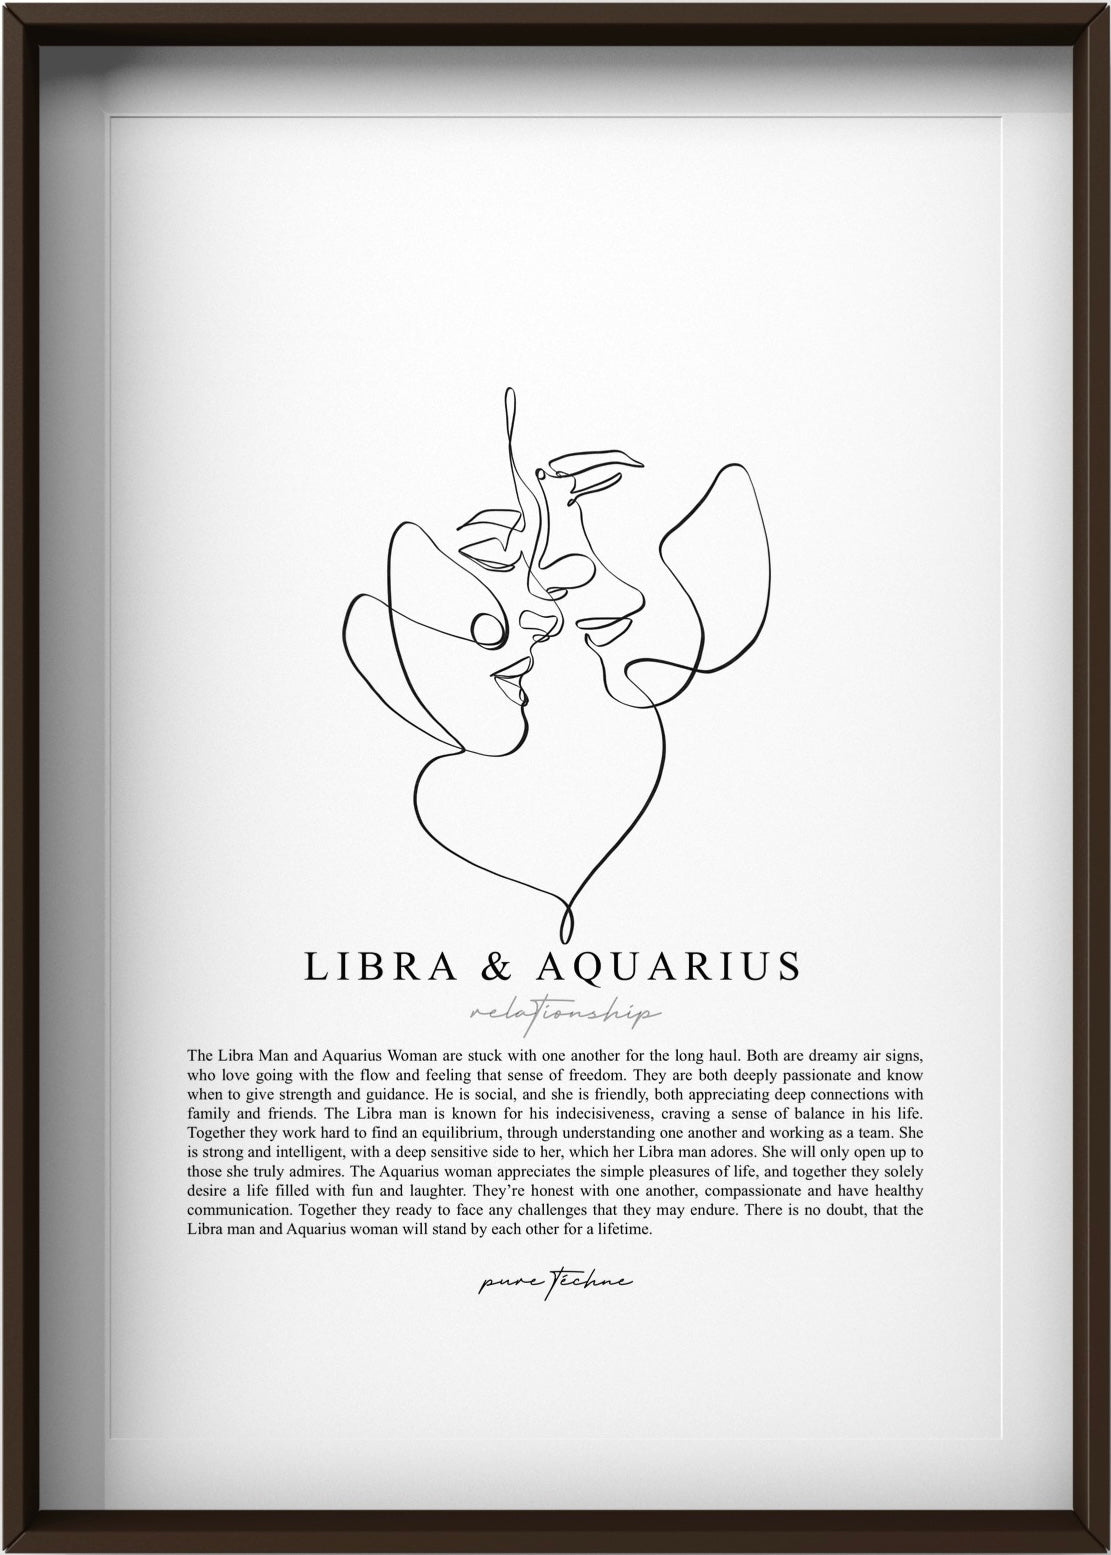 Libra Man & Aquarius Woman